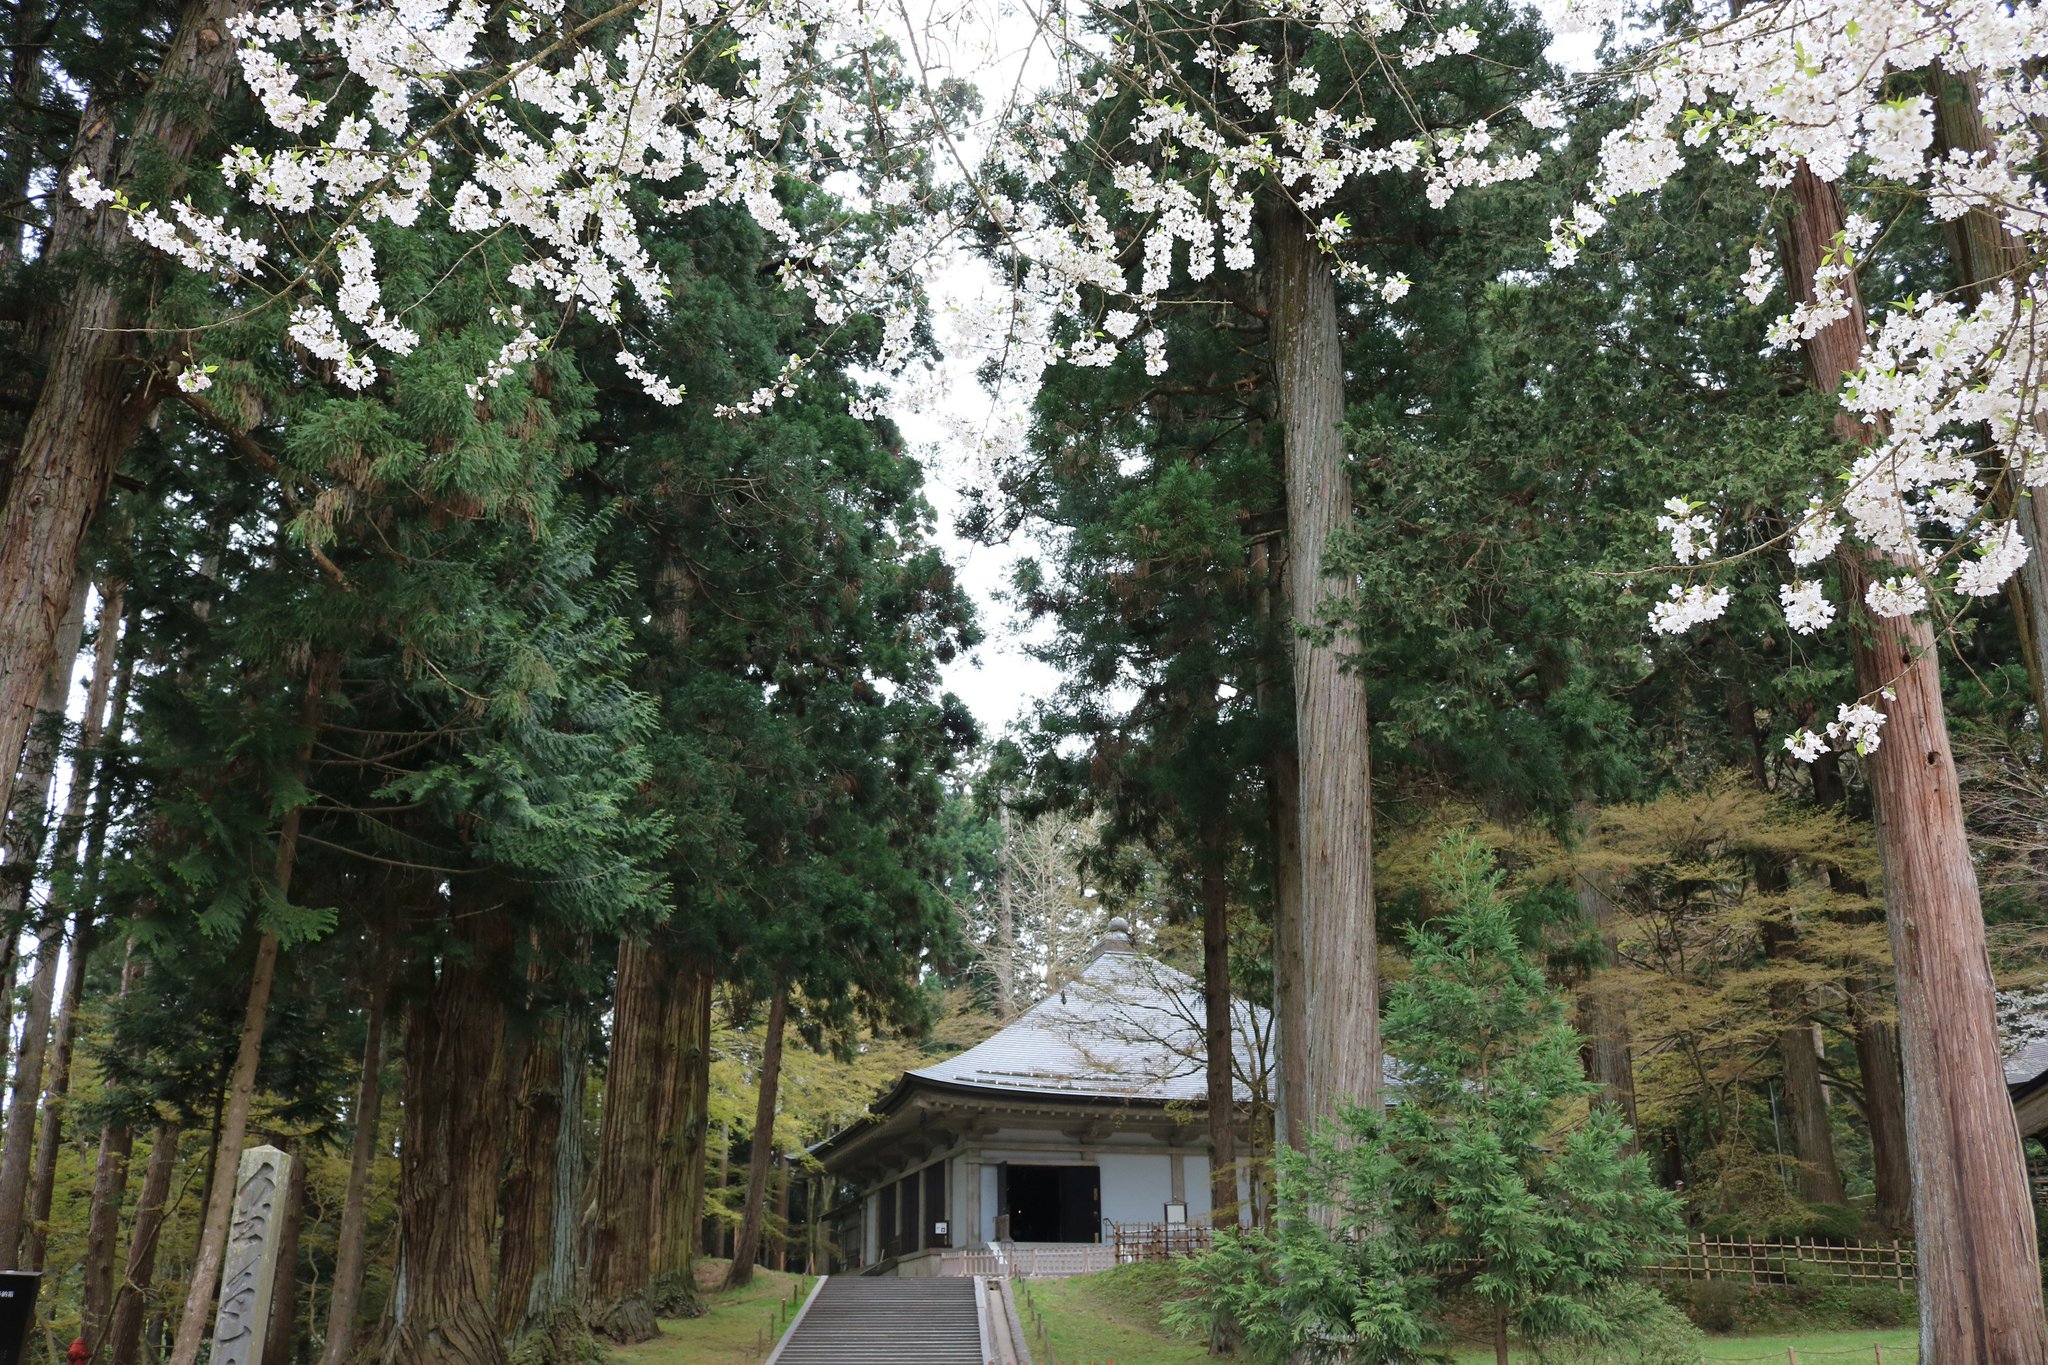 Tokyo Tweet Bird در توییتر Sakura フォトフェスティバル 16 中尊寺 の 桜 です 古代日本で高い地位を誇っていた武士の藤原氏が拠点としていた寺です 中尊寺の本堂や 金色堂 には桜が春の雰囲気に彩っていました